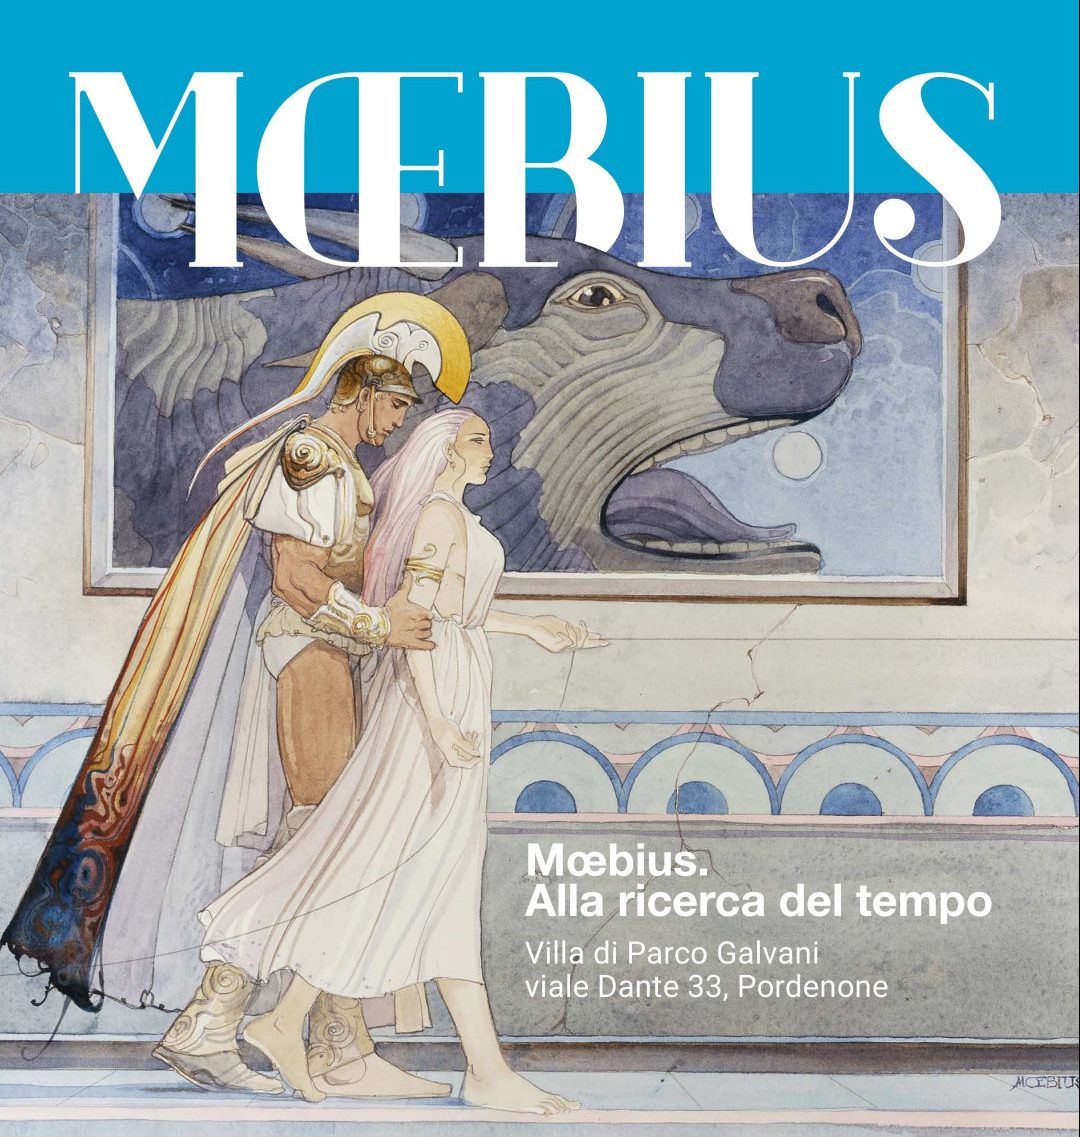 Mœbius – Alla ricerca del tempo, prorogatafino al 13 marzo